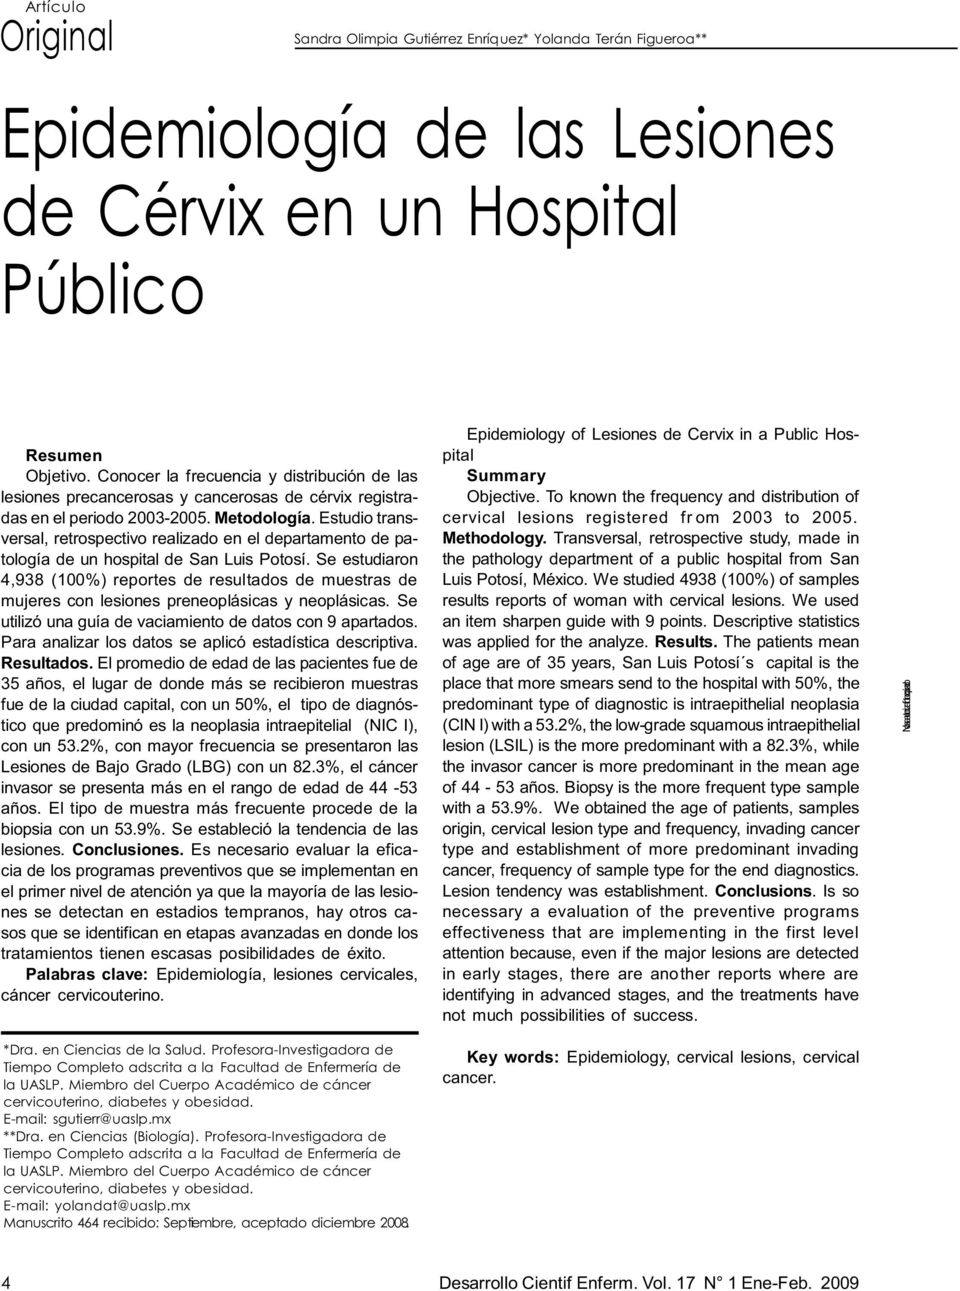 Estudio transversal, retrospectivo realizado en el departamento de patología de un hospital de San Luis Potosí.